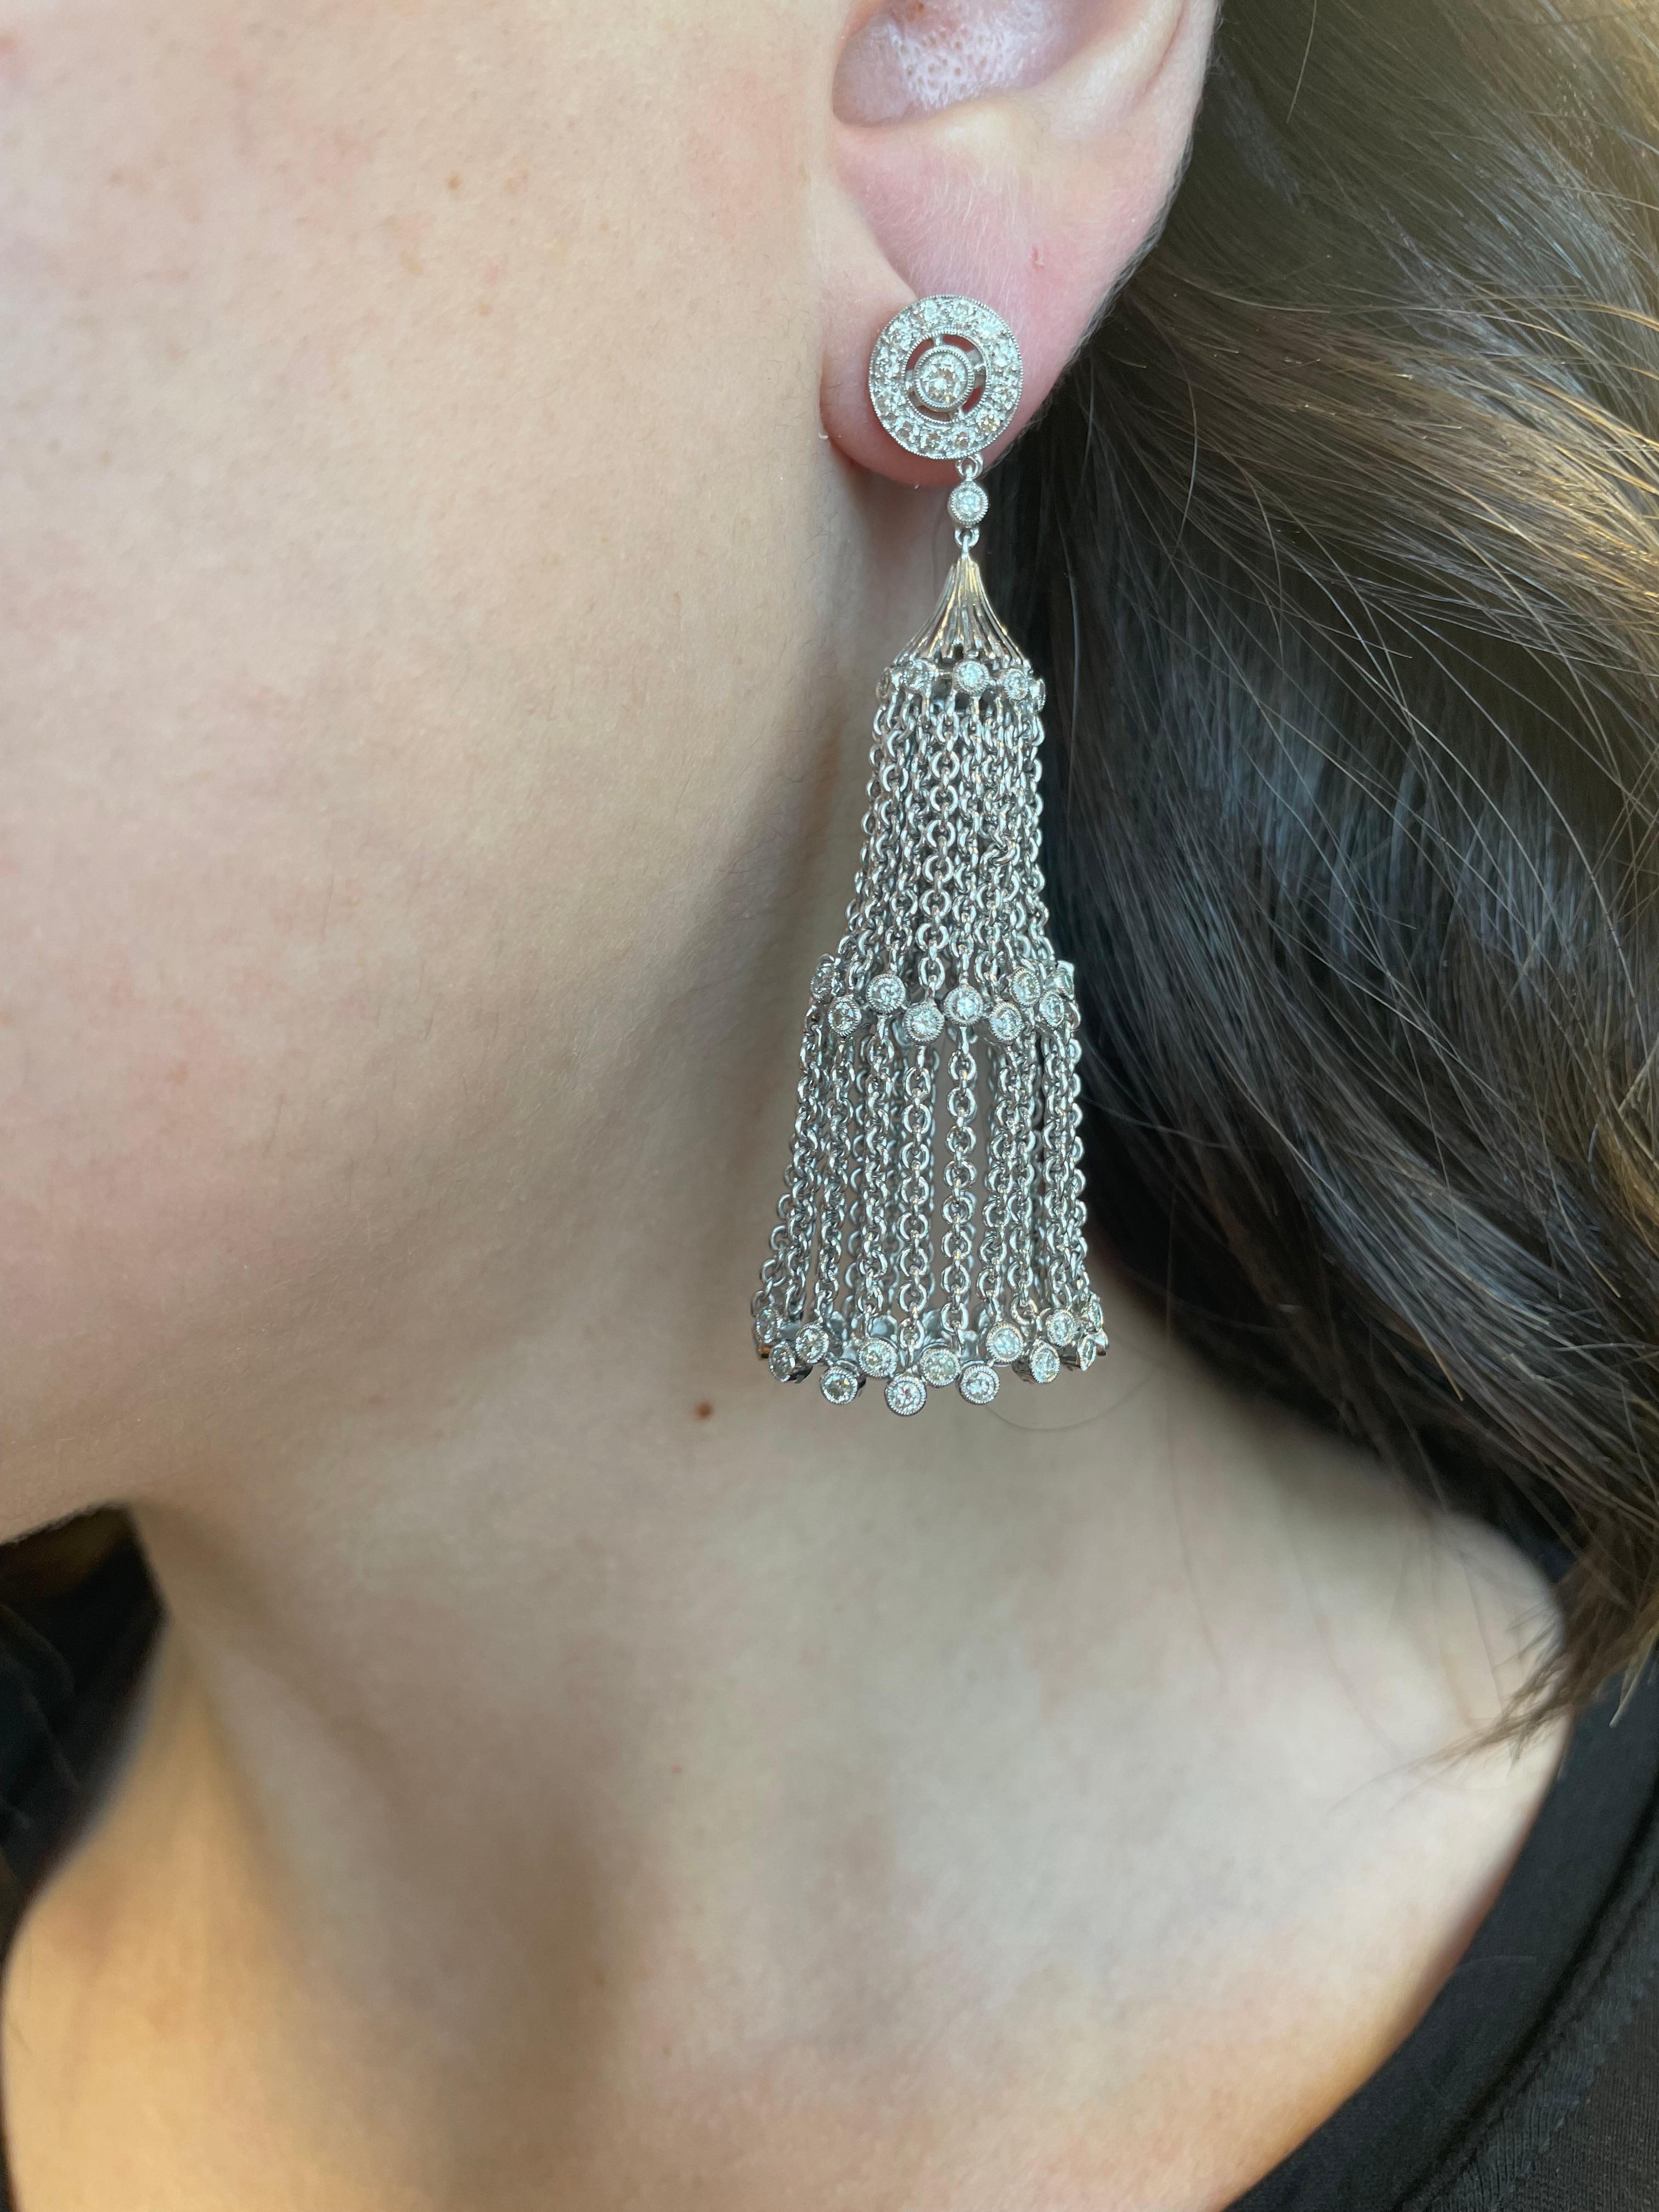 De jolies boucles d'oreilles pendantes en forme de chandelier serties de diamants.
2.20 carats de diamants ronds, de couleur H/I et de pureté SI. Lunette sertie, or blanc 18 carats.
Une évaluation actualisée par un GIA G.G. est fournie sur demande.